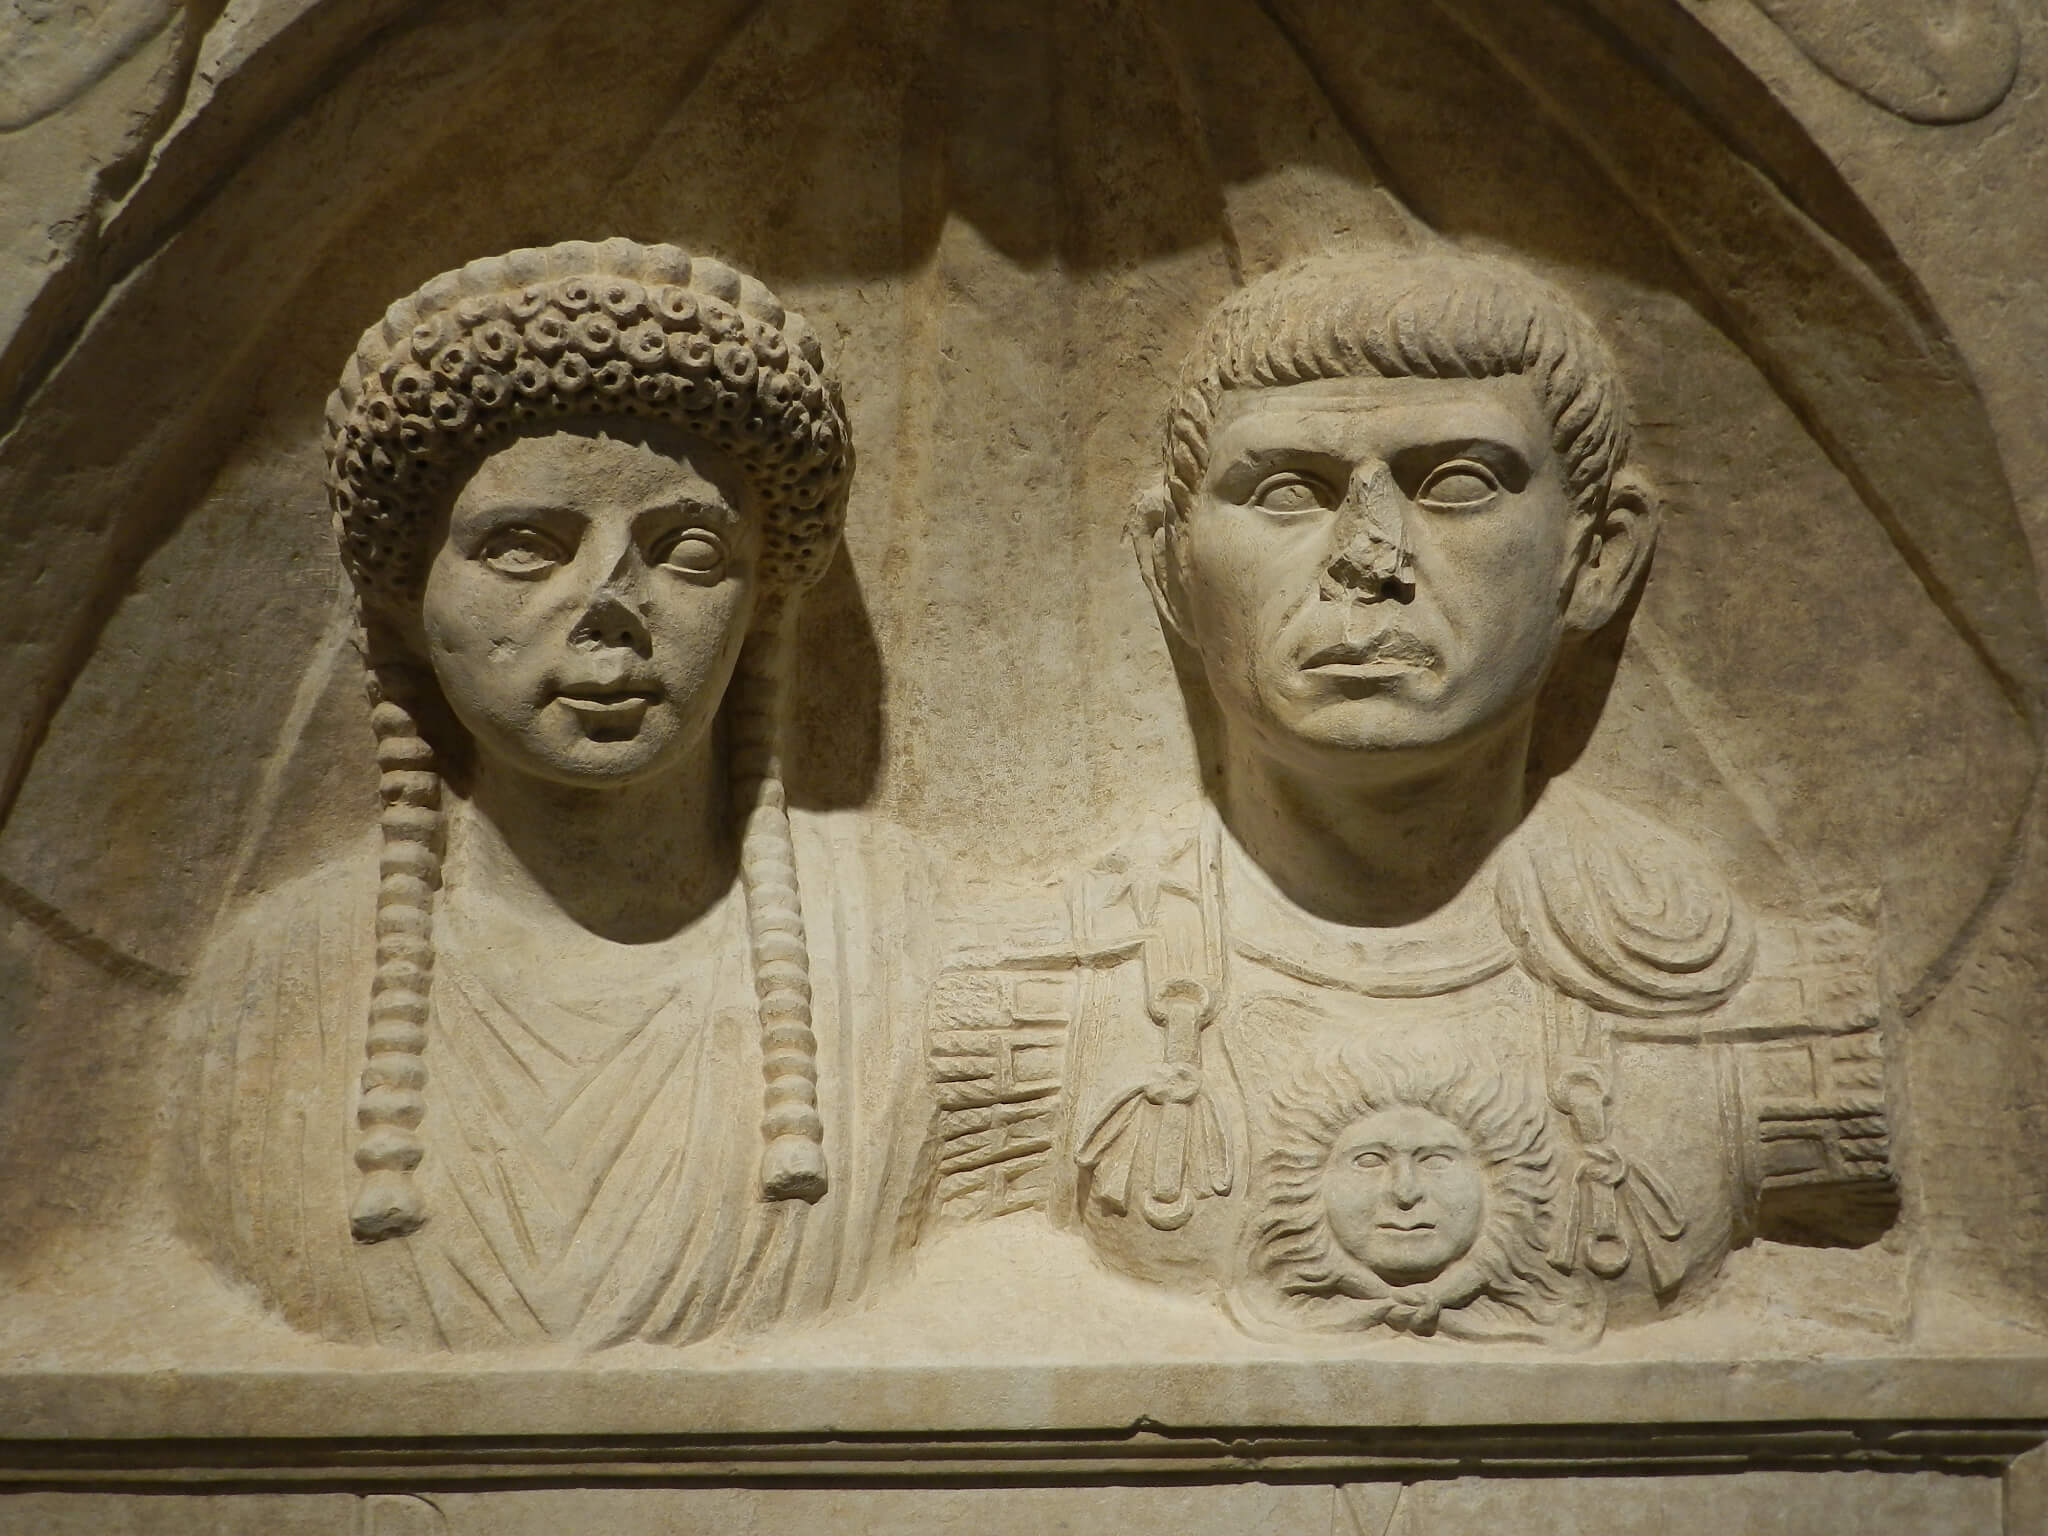 The Roman Emperor: a mortal among the gods